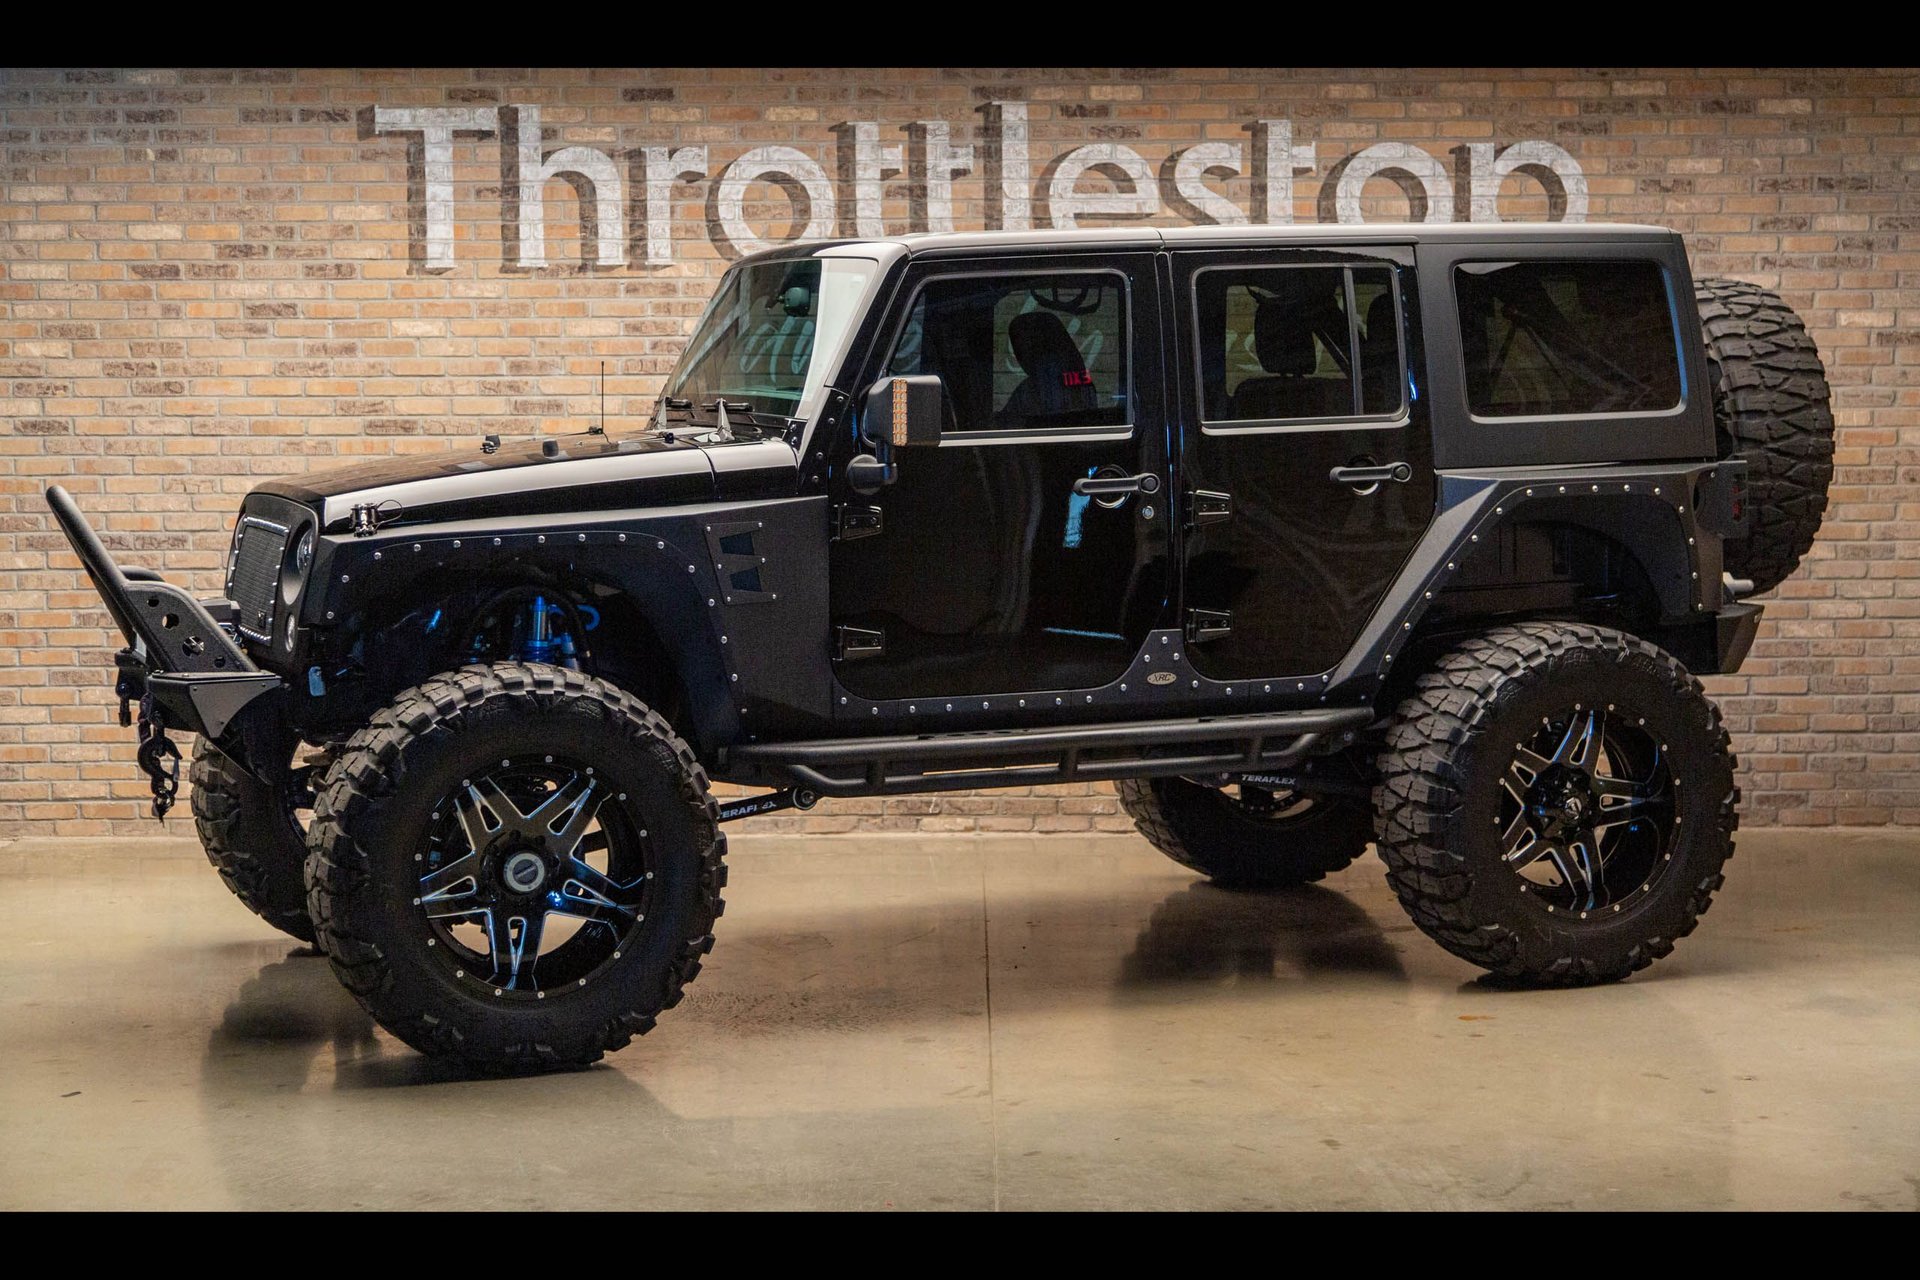 2014 Jeep Wrangler | Throttlestop | Consignment Dealer & Motorcycle Museum